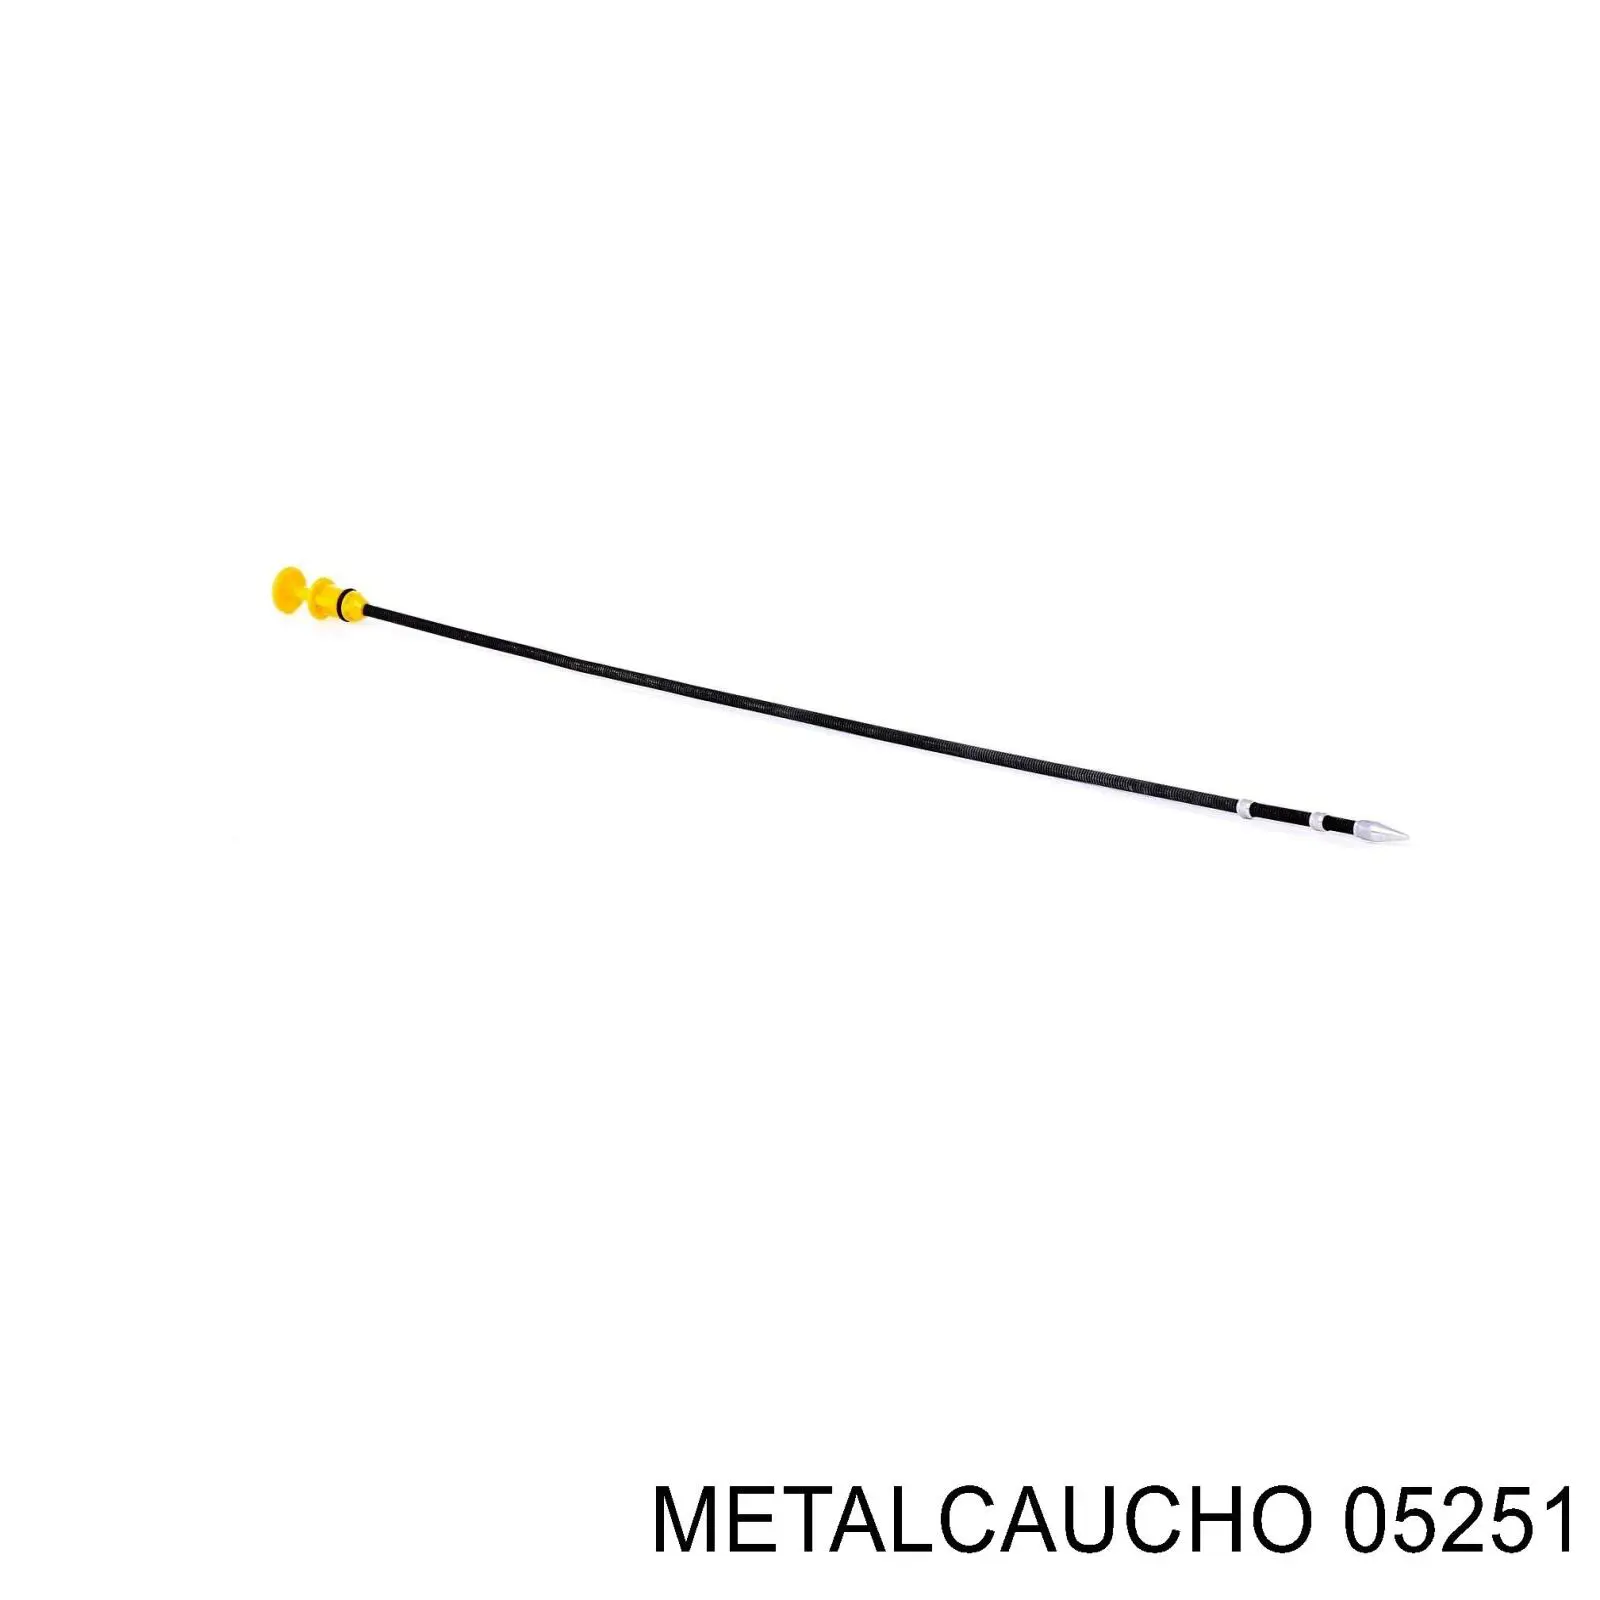 05251 Metalcaucho щуп (индикатор уровня масла в двигателе)